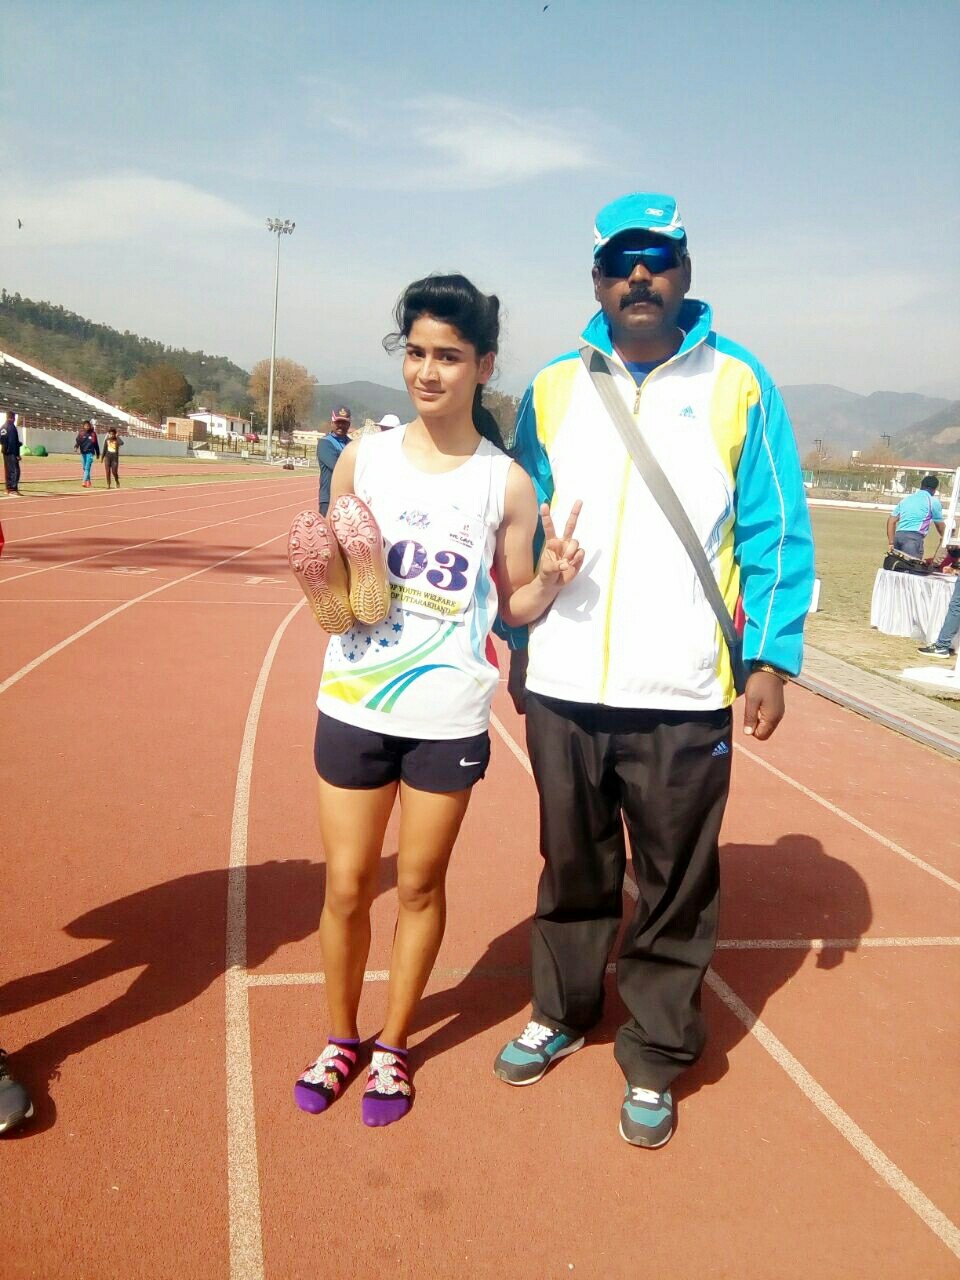 मसूरी की 21 वर्षिय राधा ने खेलो इंडिया यूनिवर्सिटी खेलों में जीता गोल्ड, मसूरी में खुशी की लहर